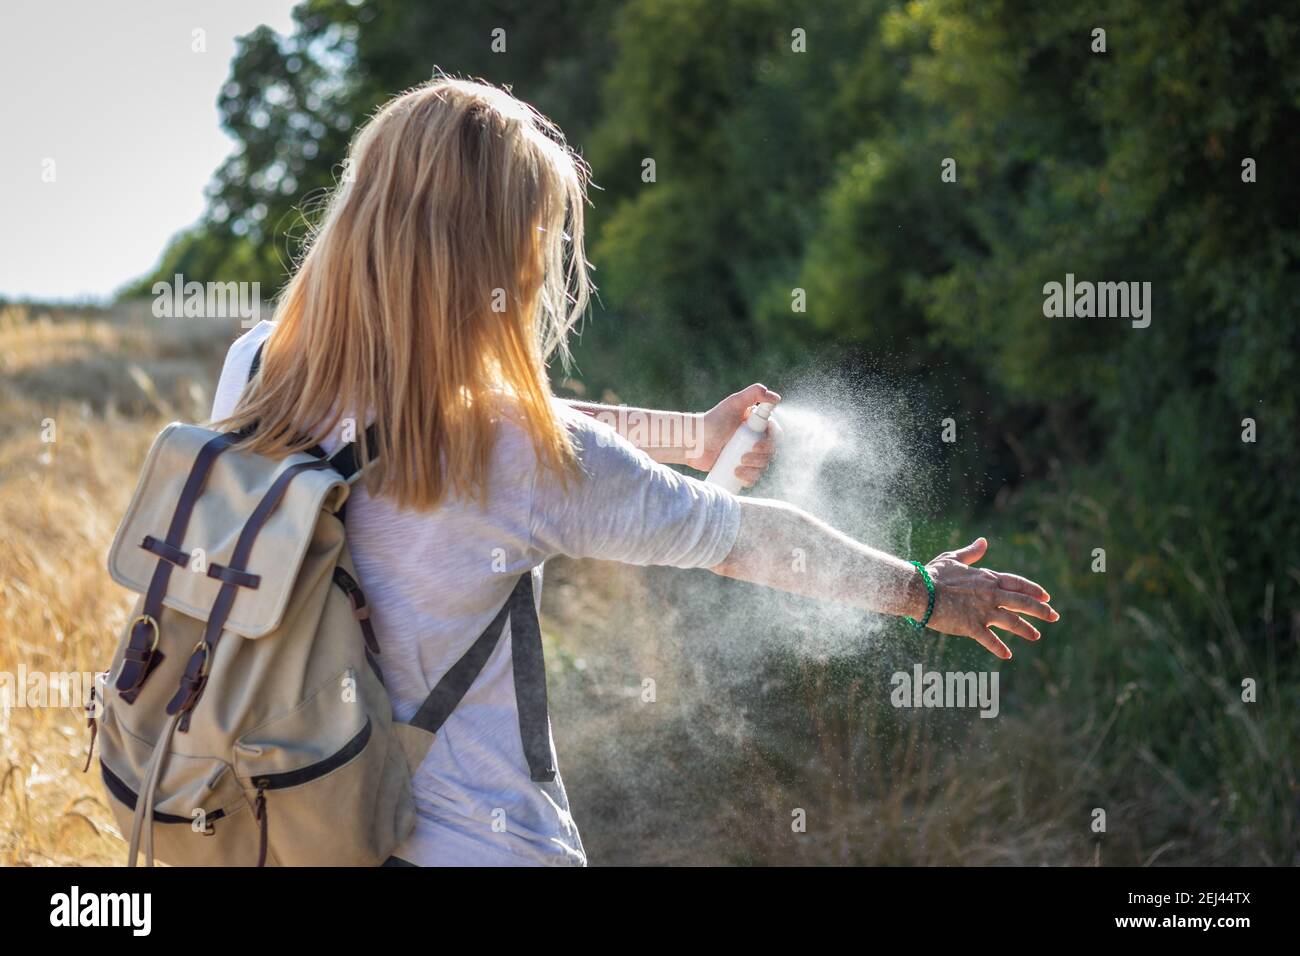 Mujer turista aplicando repelente de mosquitos a mano durante la caminata en la naturaleza. Repelente de insectos. Protección de la piel contra garrapatas y otros insectos. Foto de stock